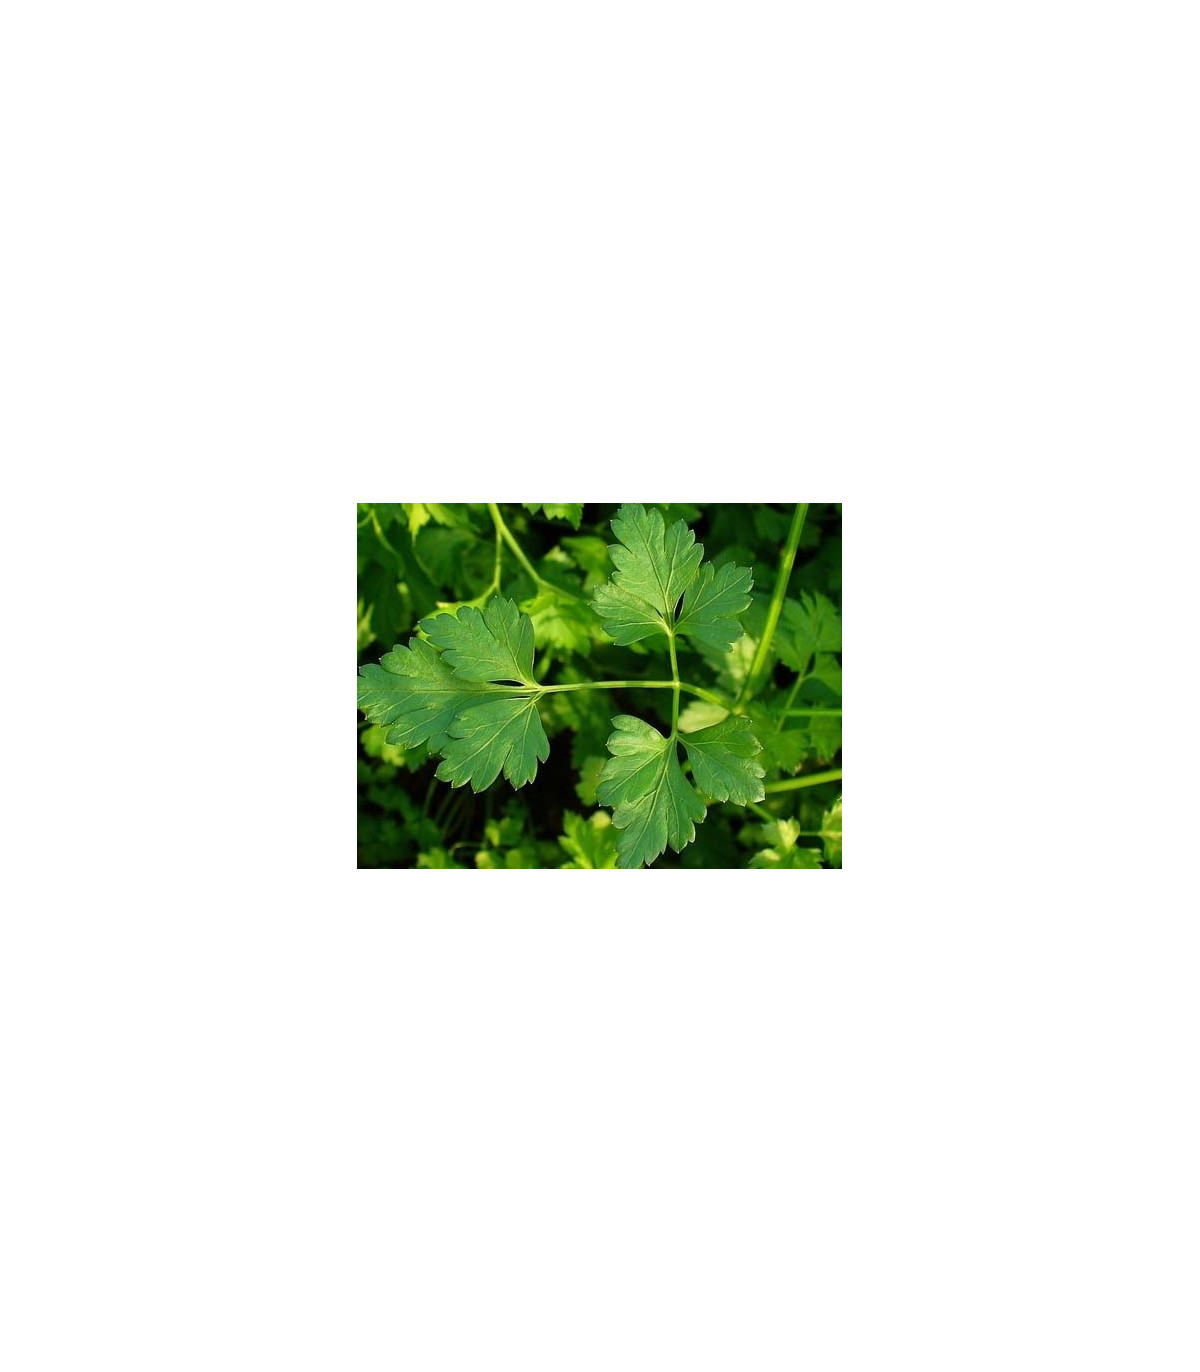 Semínka petržele - Petroselinum crispum - Petržel Clivi - prodej semen - 1 g